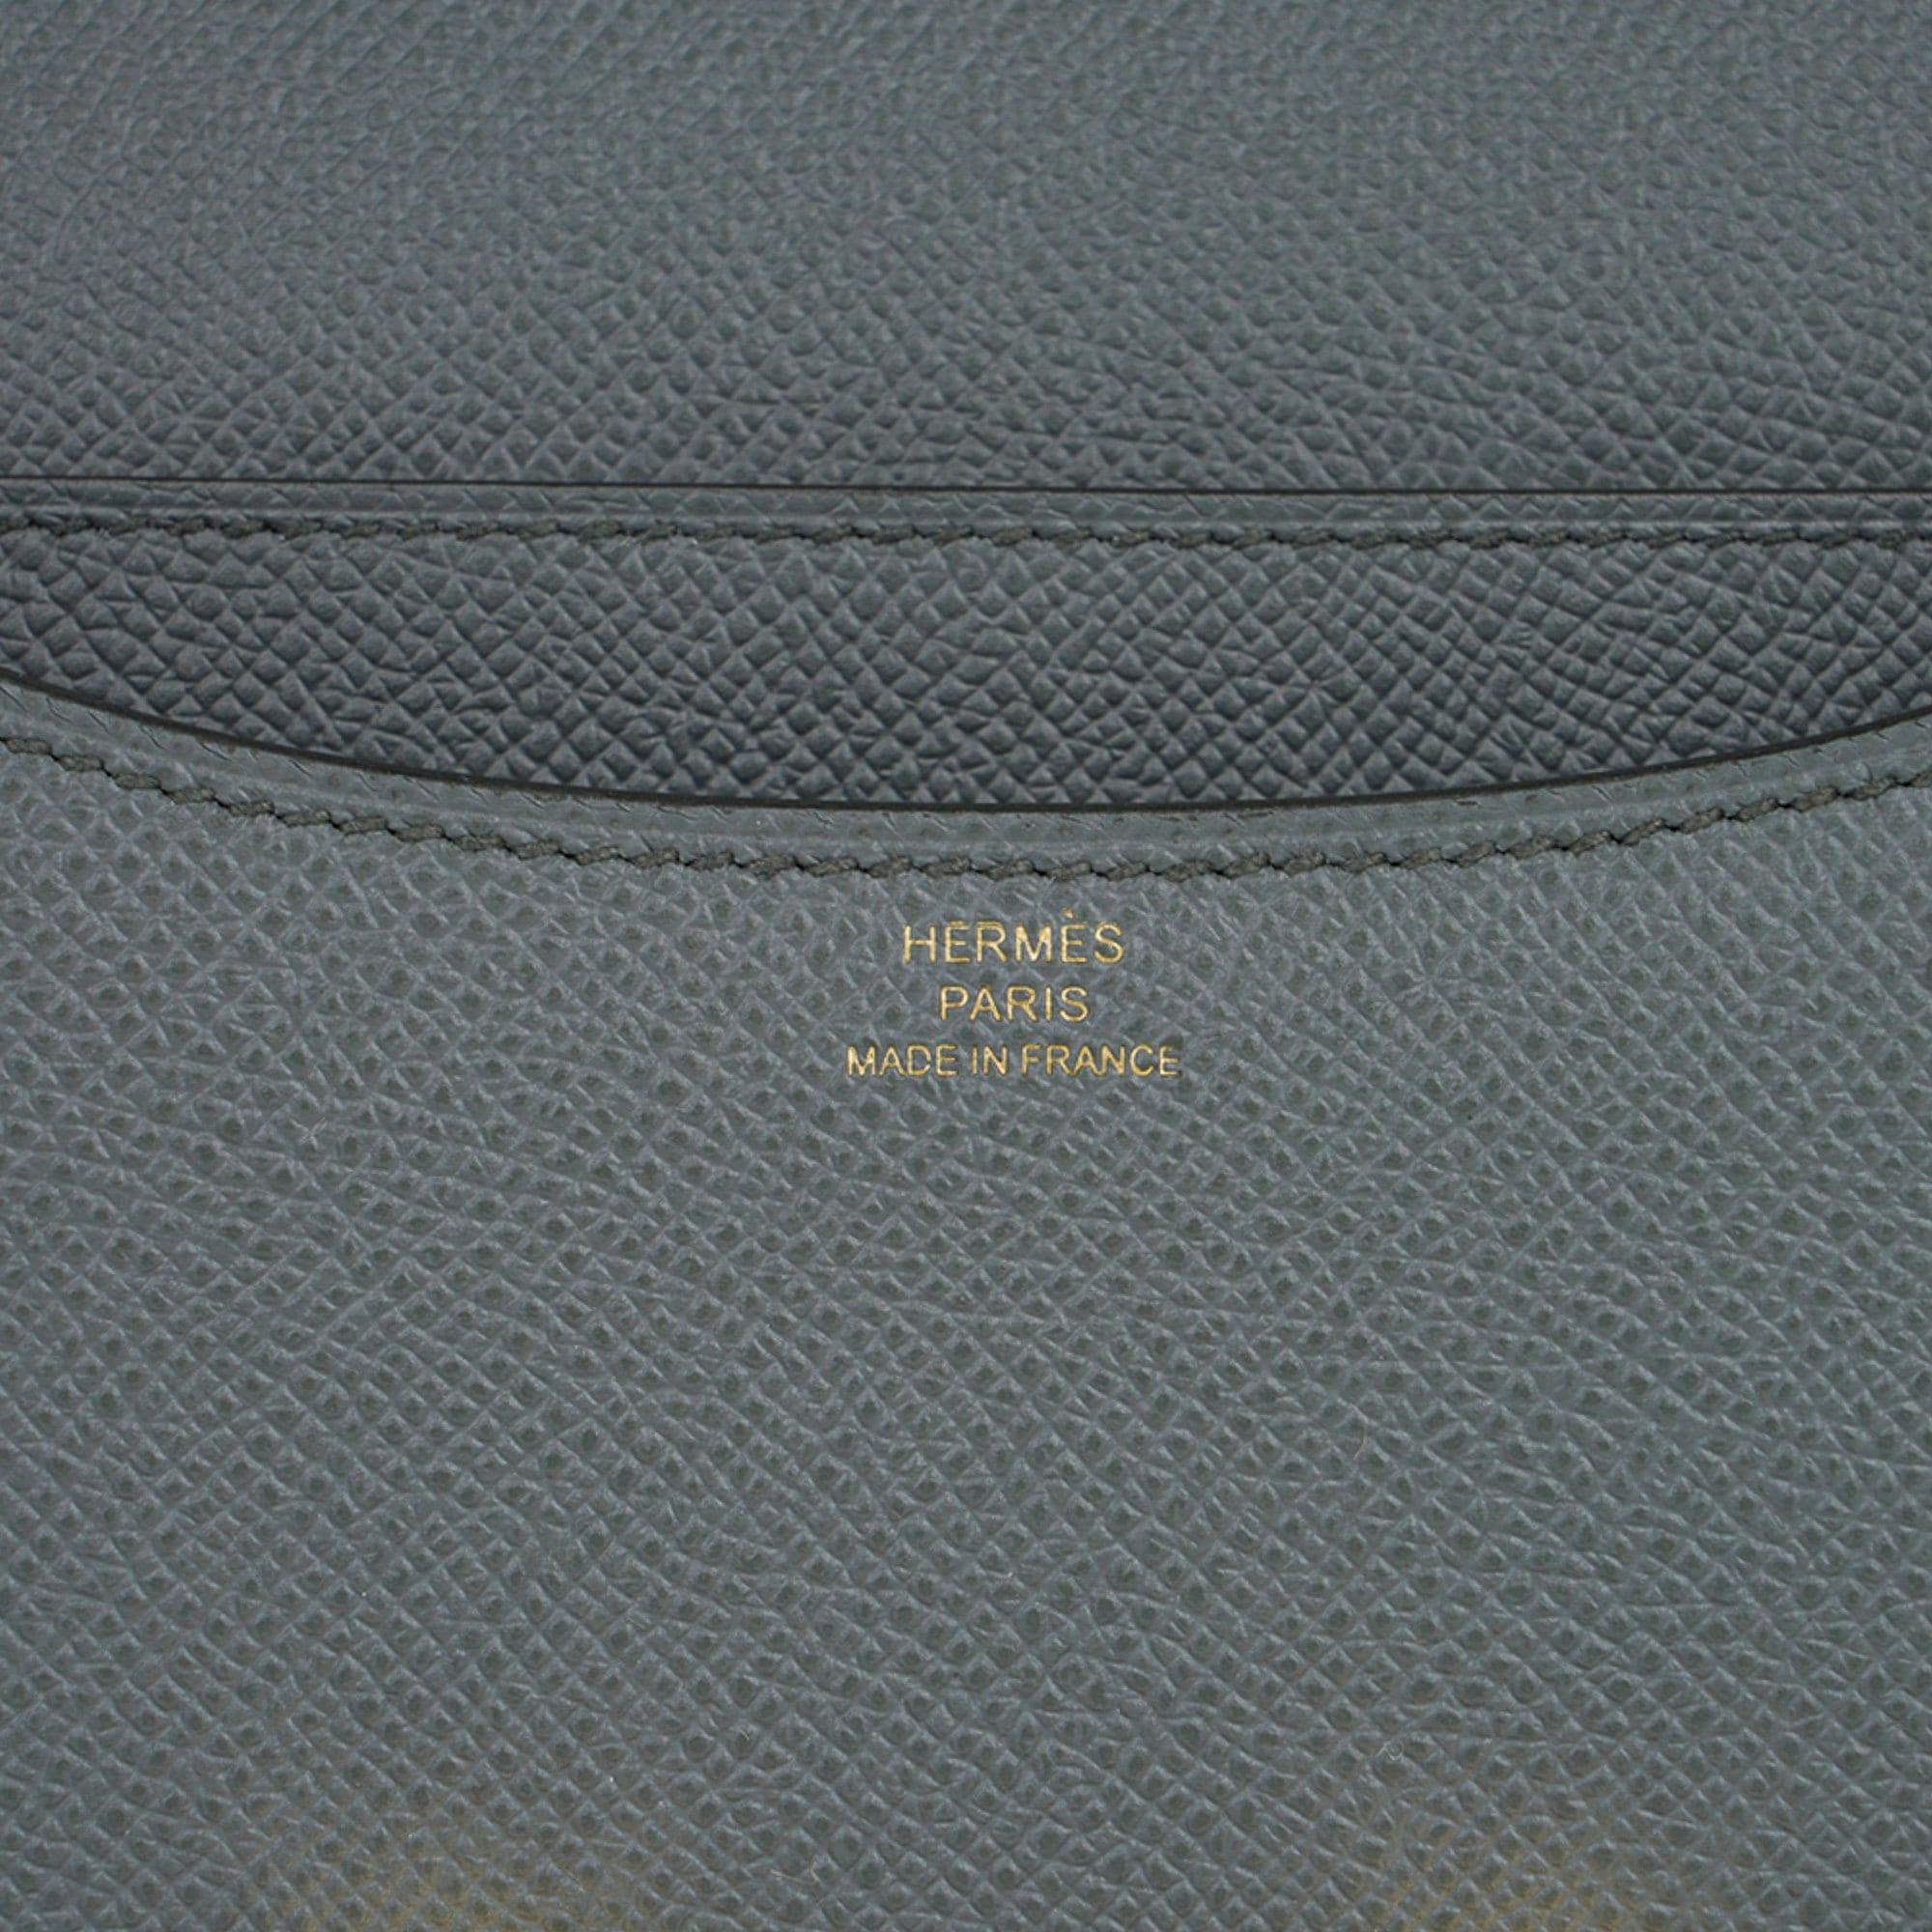 LoVey Goody - Brand New Hermes Constance 18 Vert Amande Epsom in